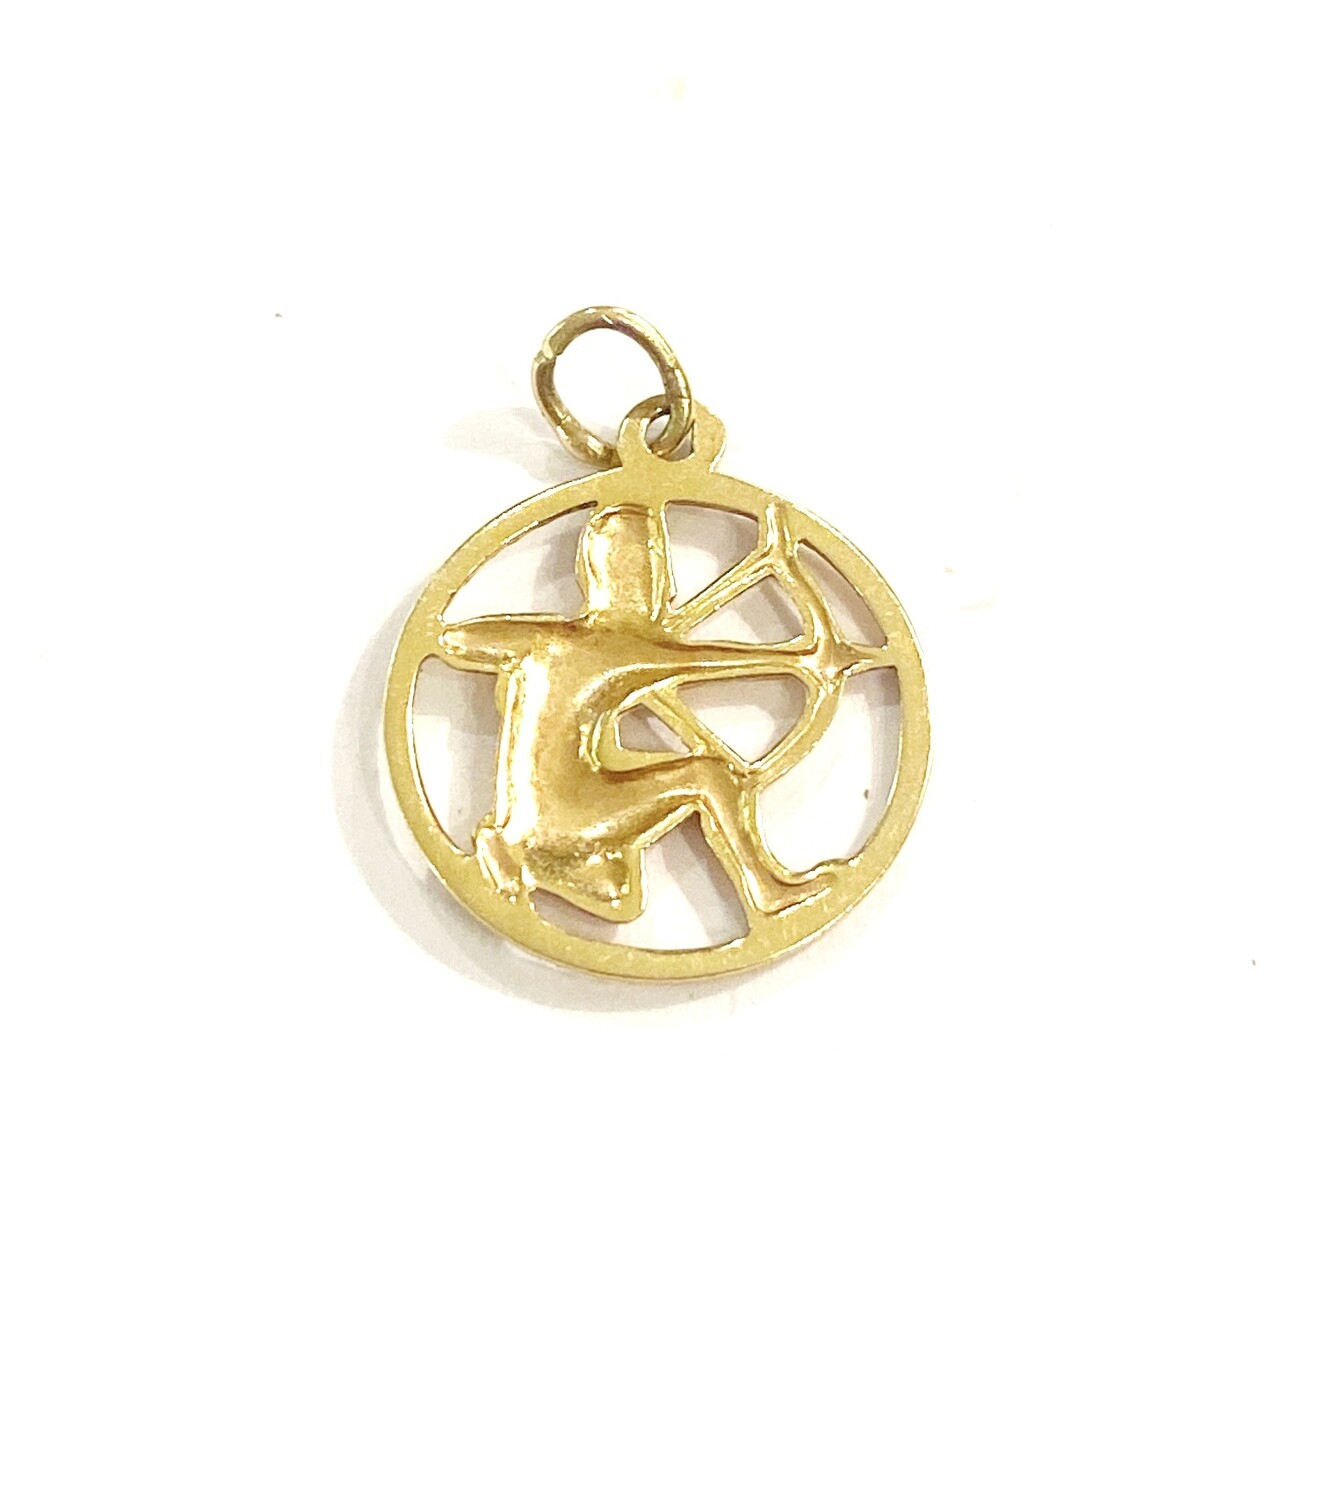 18ct vintage sagittarius charm / pendant